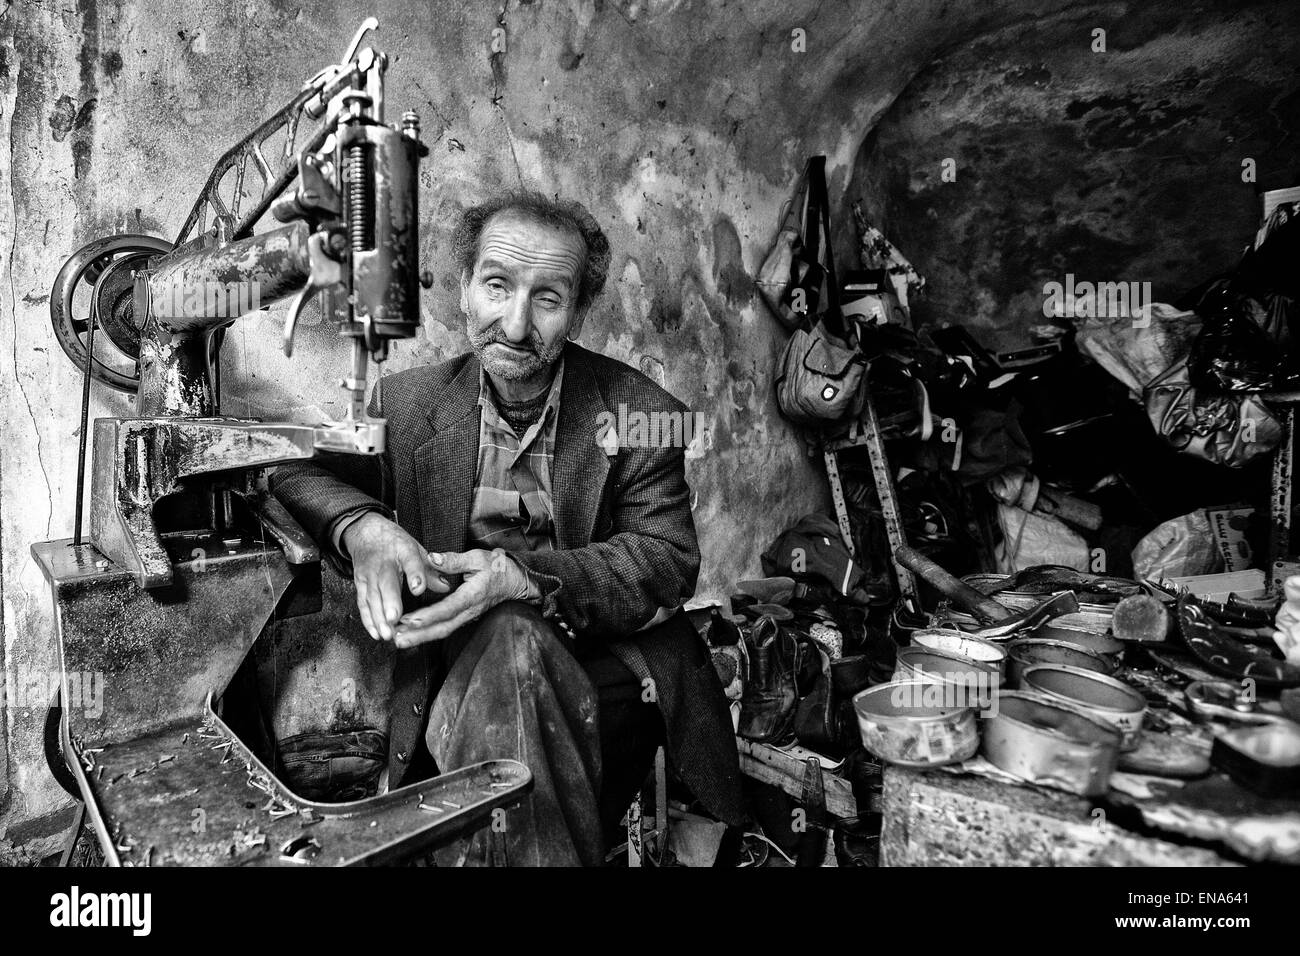 La Palestine. Mar 22, 2011. Un cordonnier dans son magasin. Hébron. Mar. 22, 2011. Cisjordanie, Palestine. © Gabriel Romero/ZUMA/Alamy Fil Live News Banque D'Images